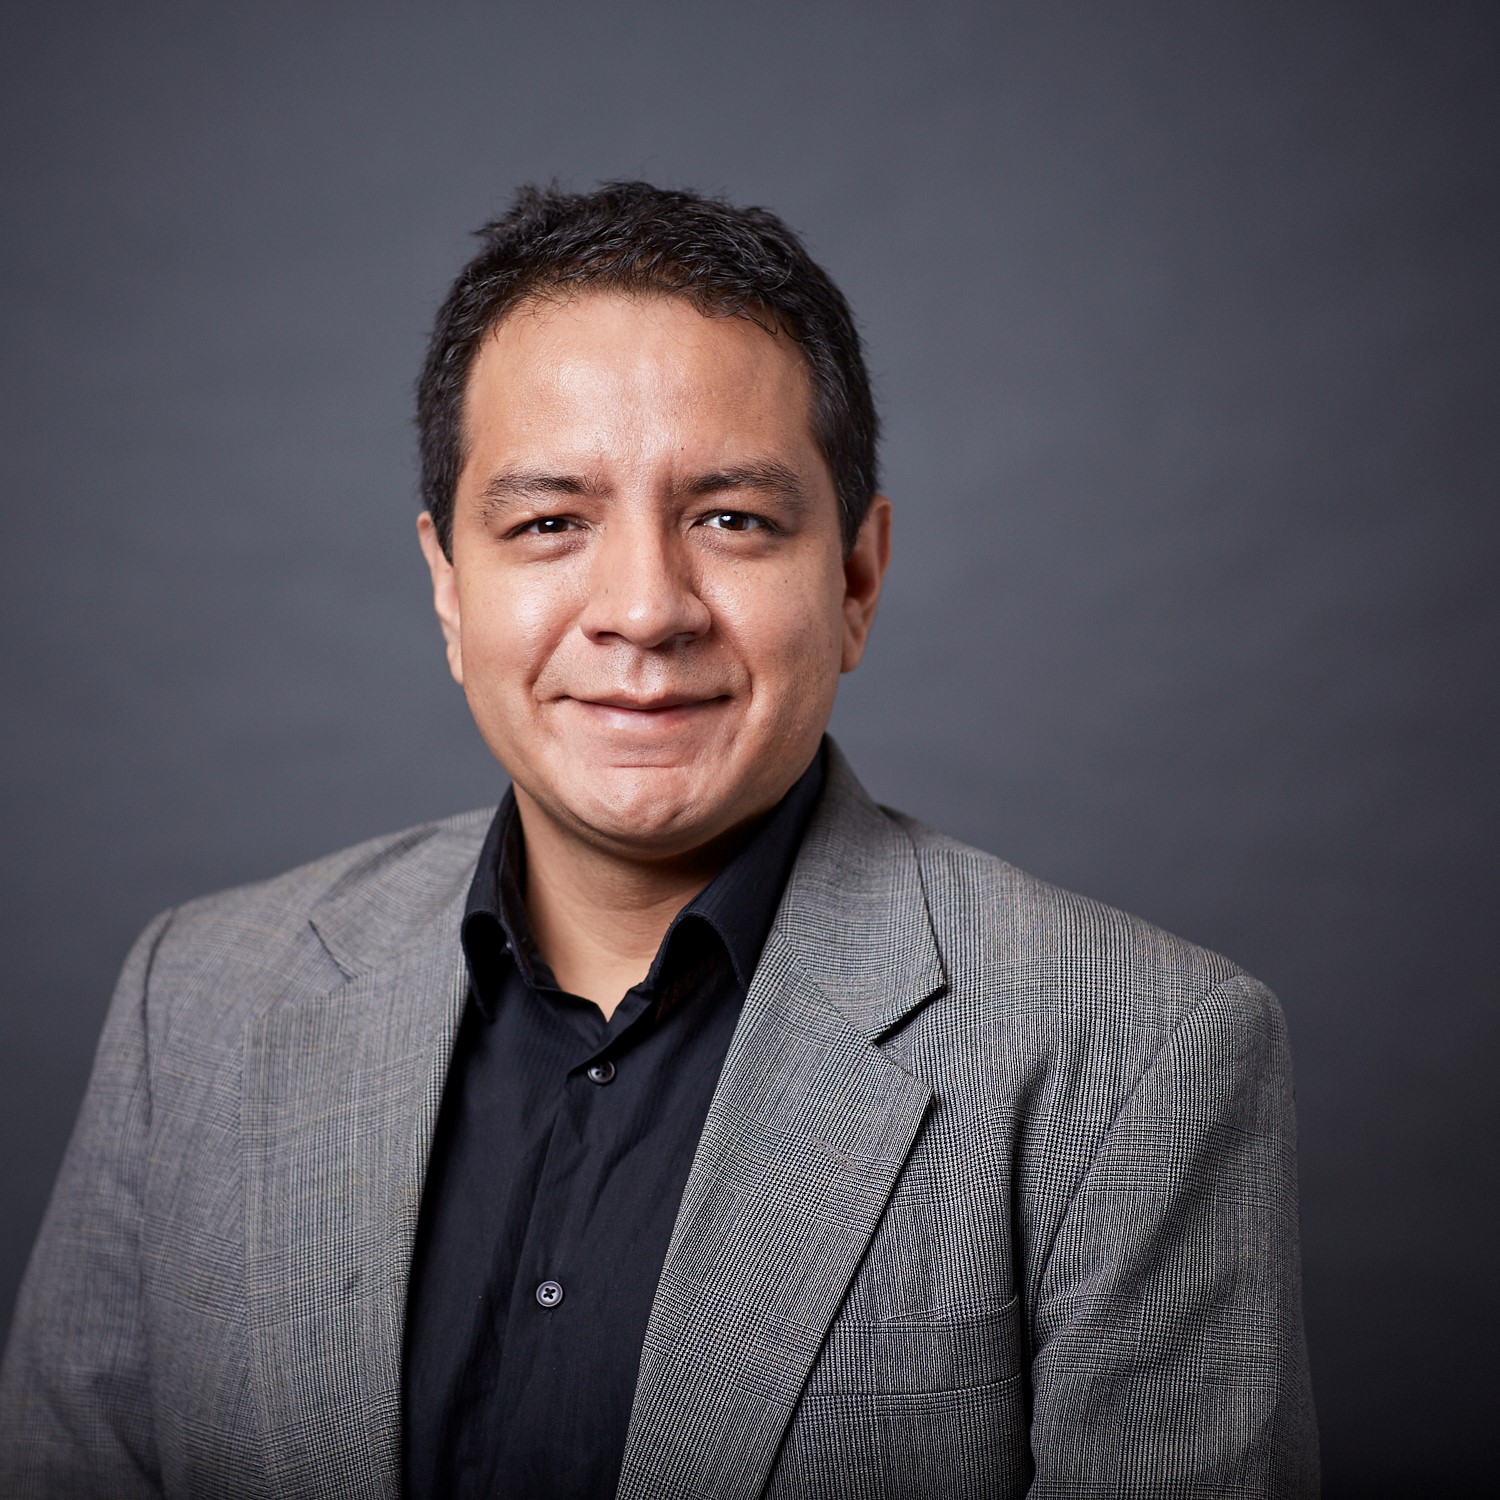 Dr. Edward Mezones Holguín, médico epidemiólogo, investigador senior de la Universidad San Ignacio de Loyola